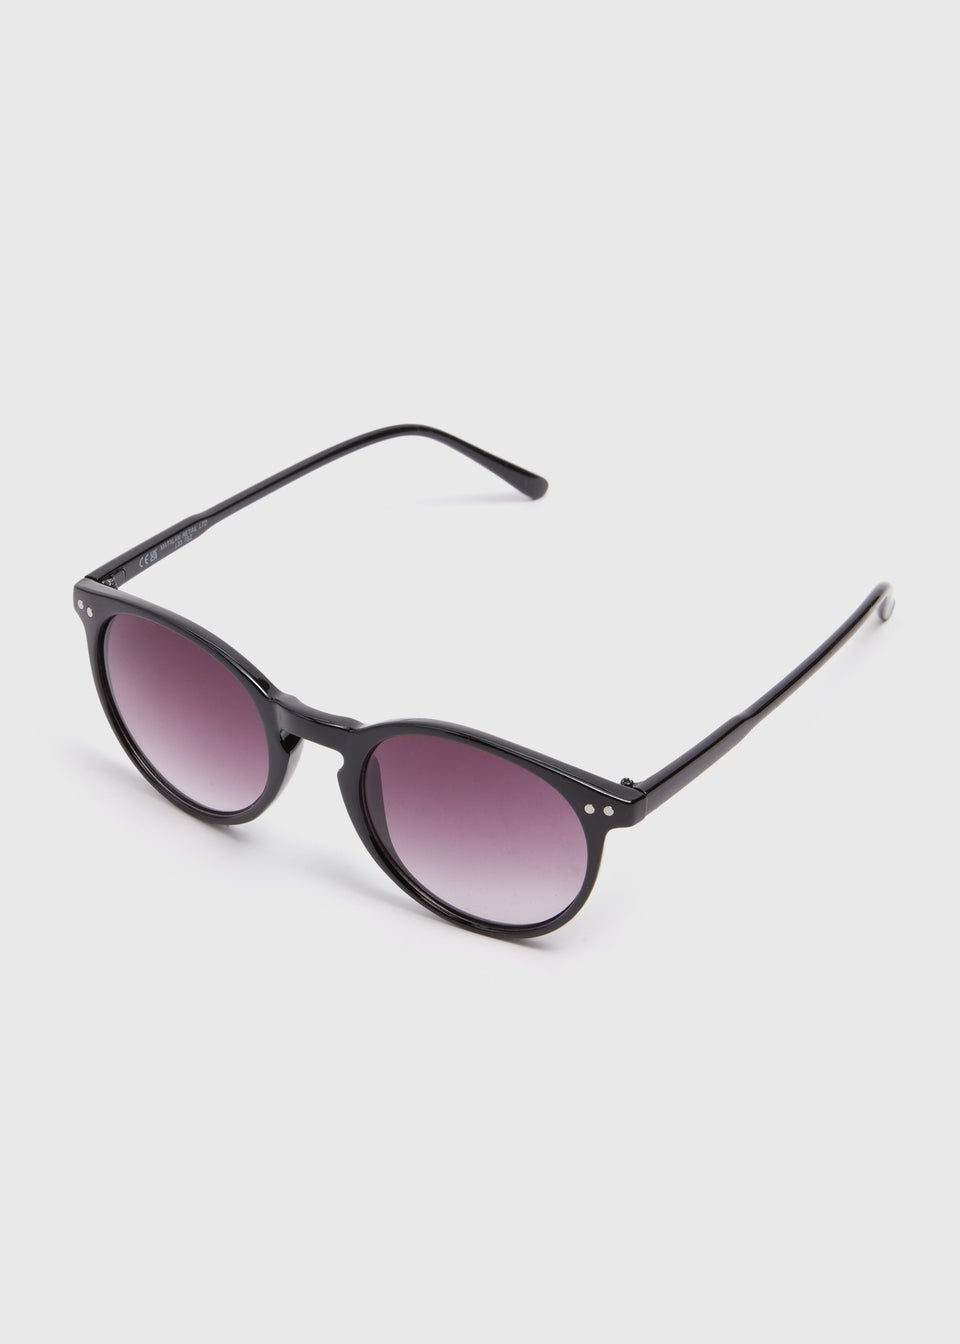 Classic Plastic Round Black Sunglasses